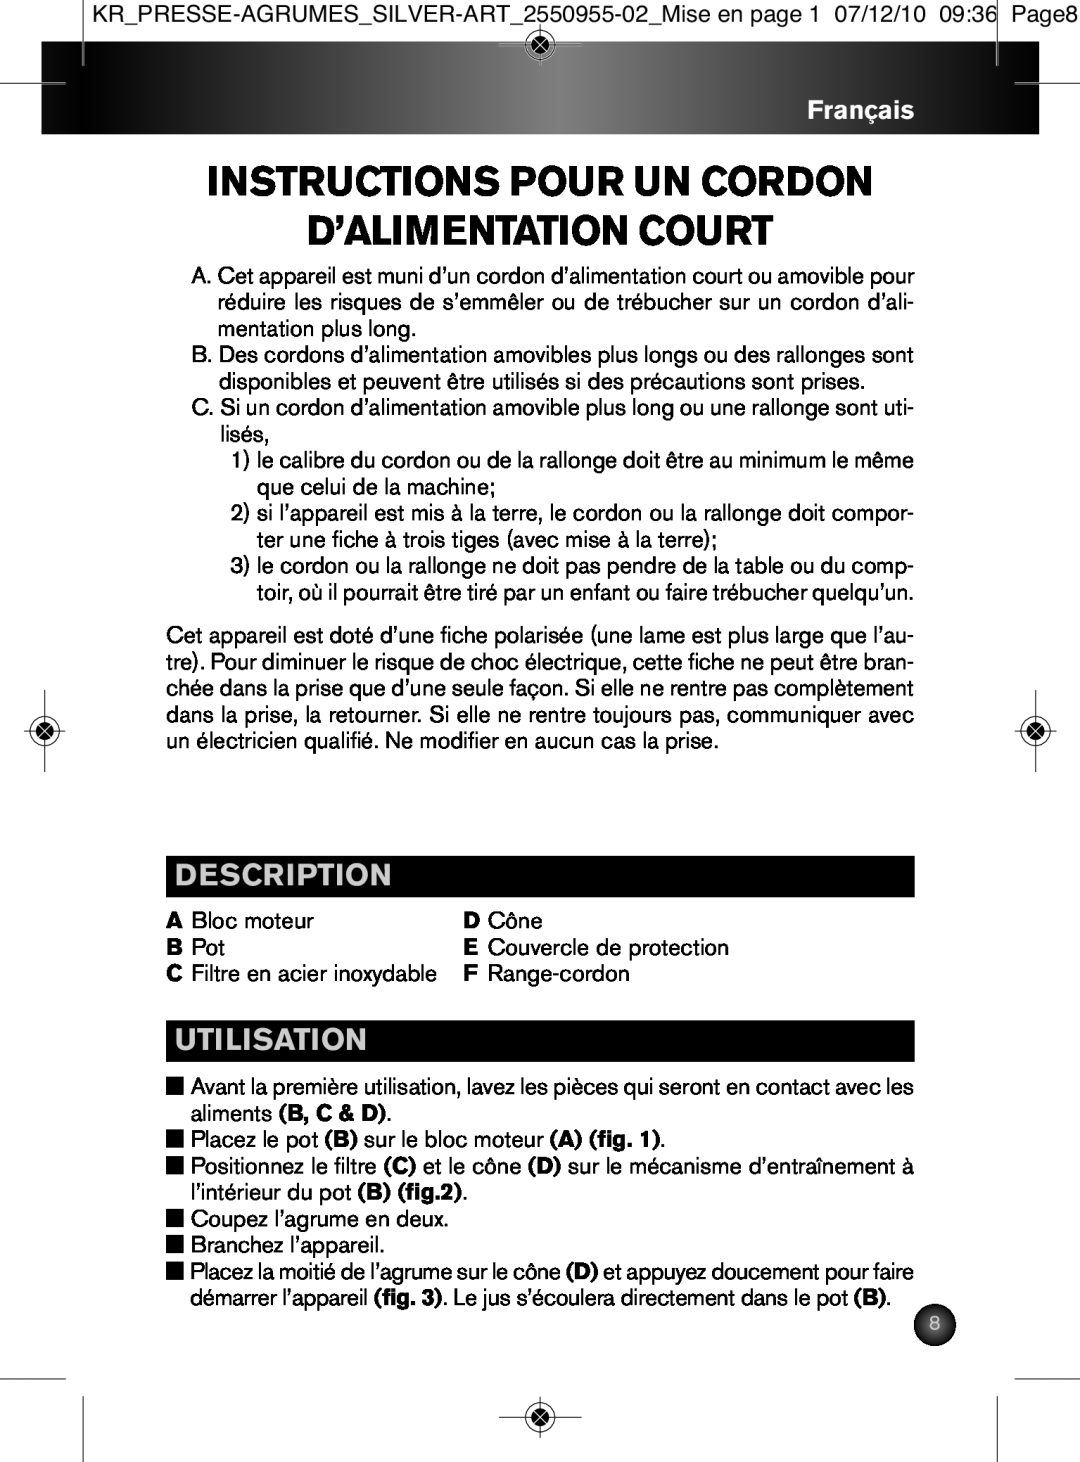 Krups 2550955-02 manual Instructions Pour Un Cordon D’Alimentation Court, Utilisation, Description, Français, A Bloc moteur 